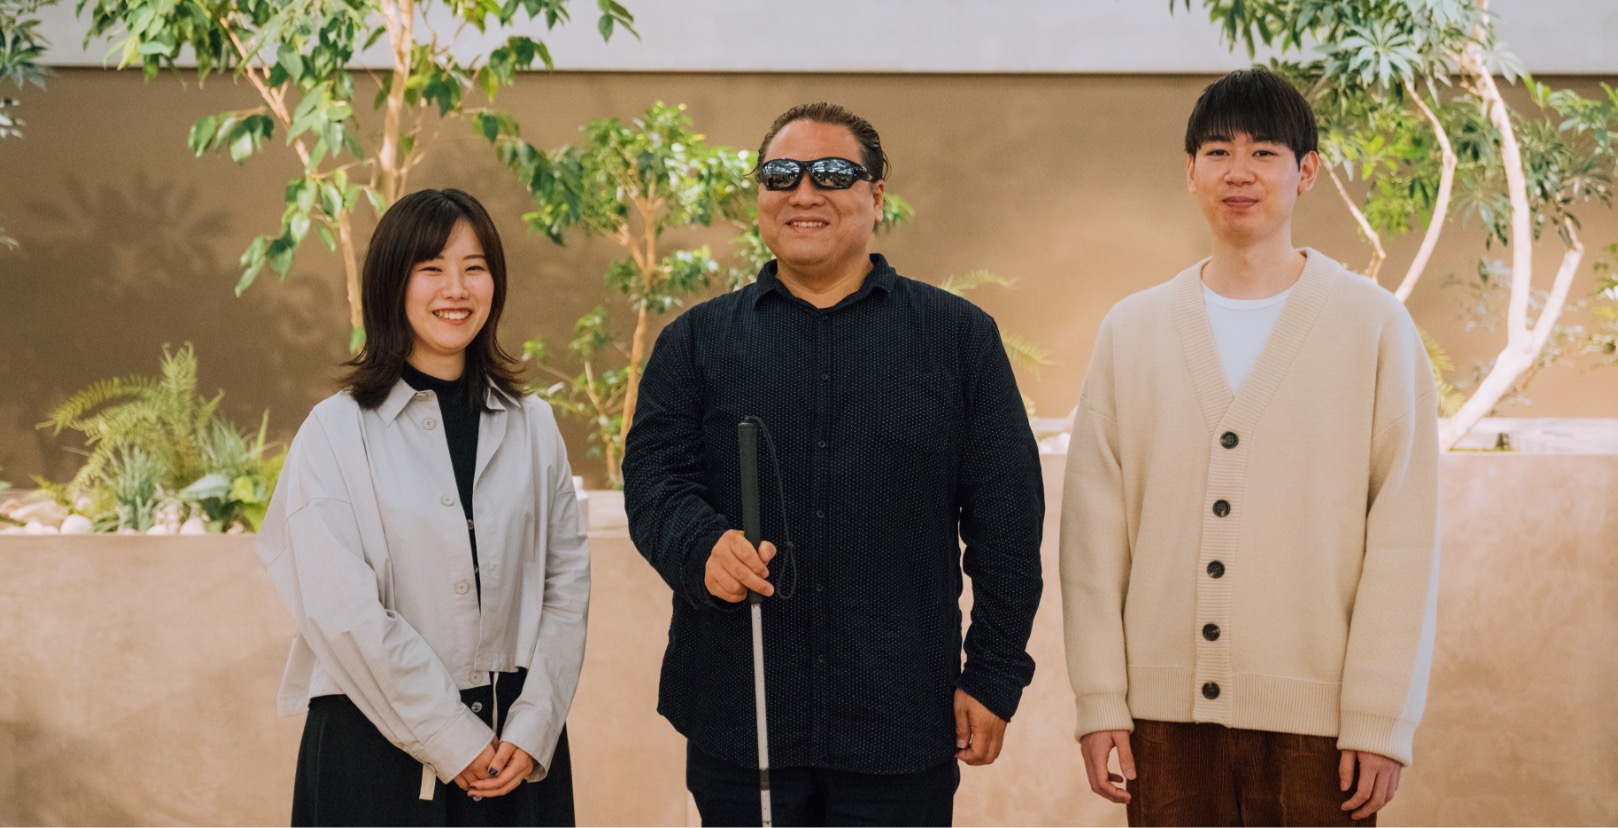 ソニー株式会社(SEC)の伊藤鈴さん、佐武陸史さんが佐藤 尋宣さんを囲んでカメラ目線で笑顔の写真